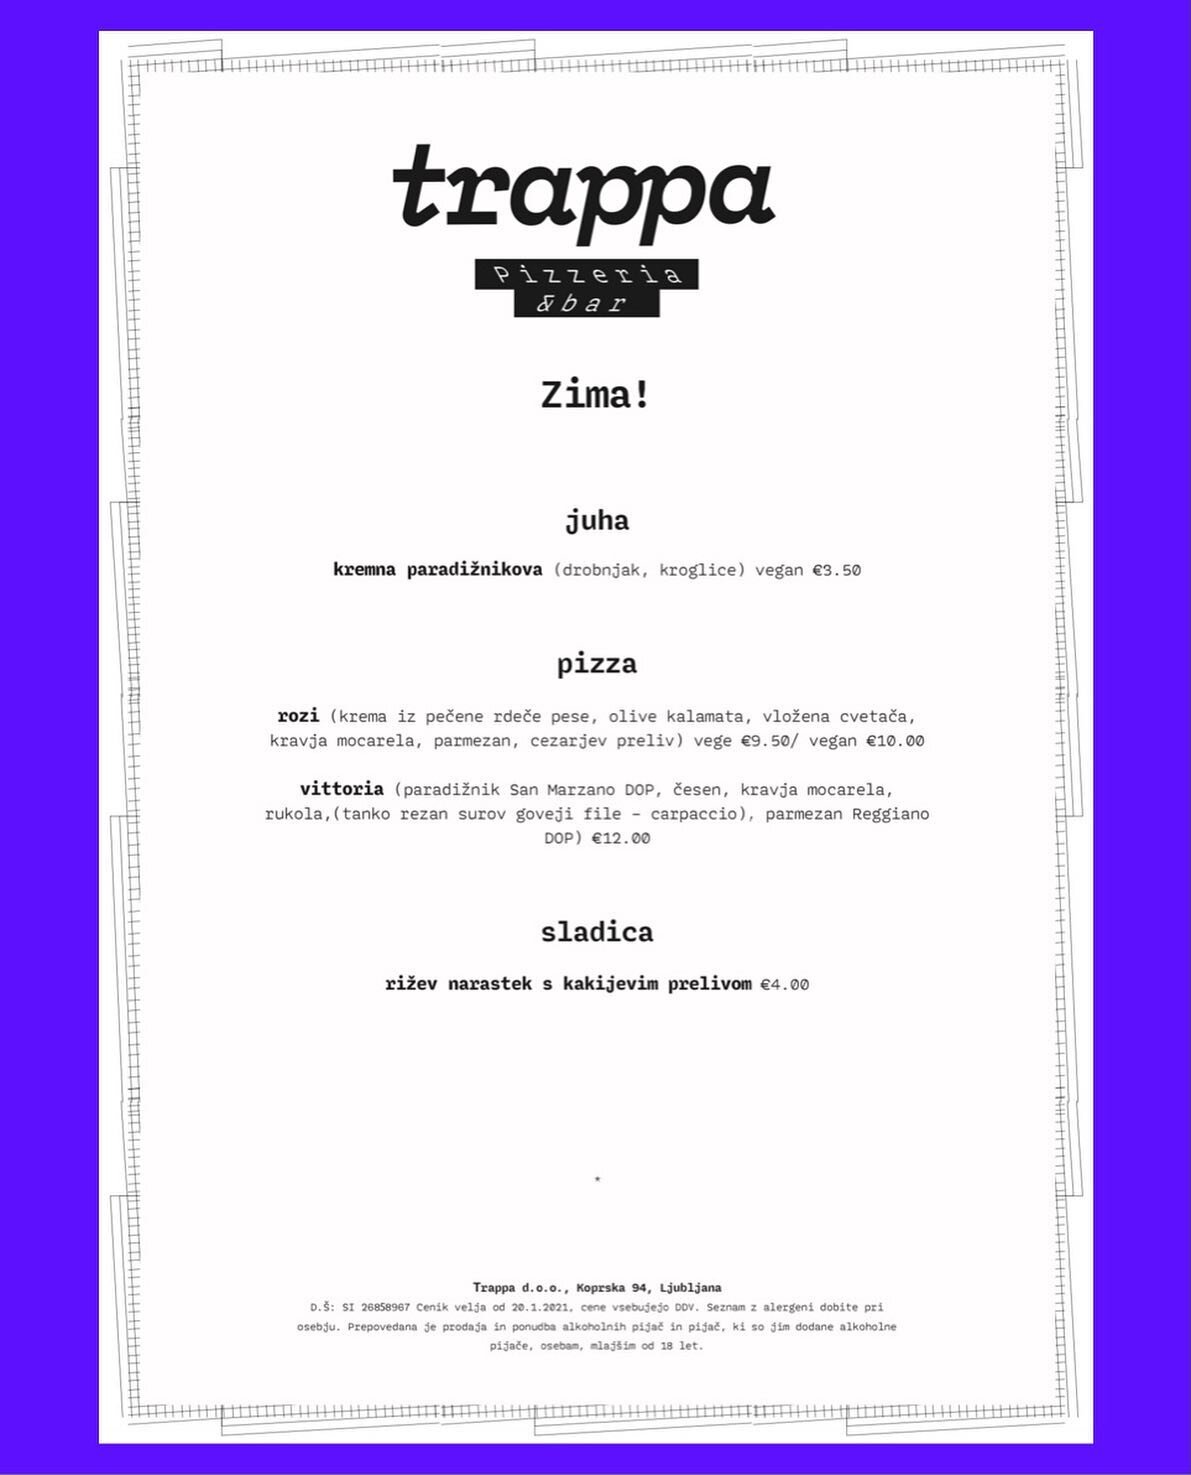 ✨ Obljubljena zimska ponudba je na voljo od danes naprej. ✨🎉 
.
.
.
#trappa #trappazima #trappapizza  #pizzaljubljana #igslovenia #igljubljana